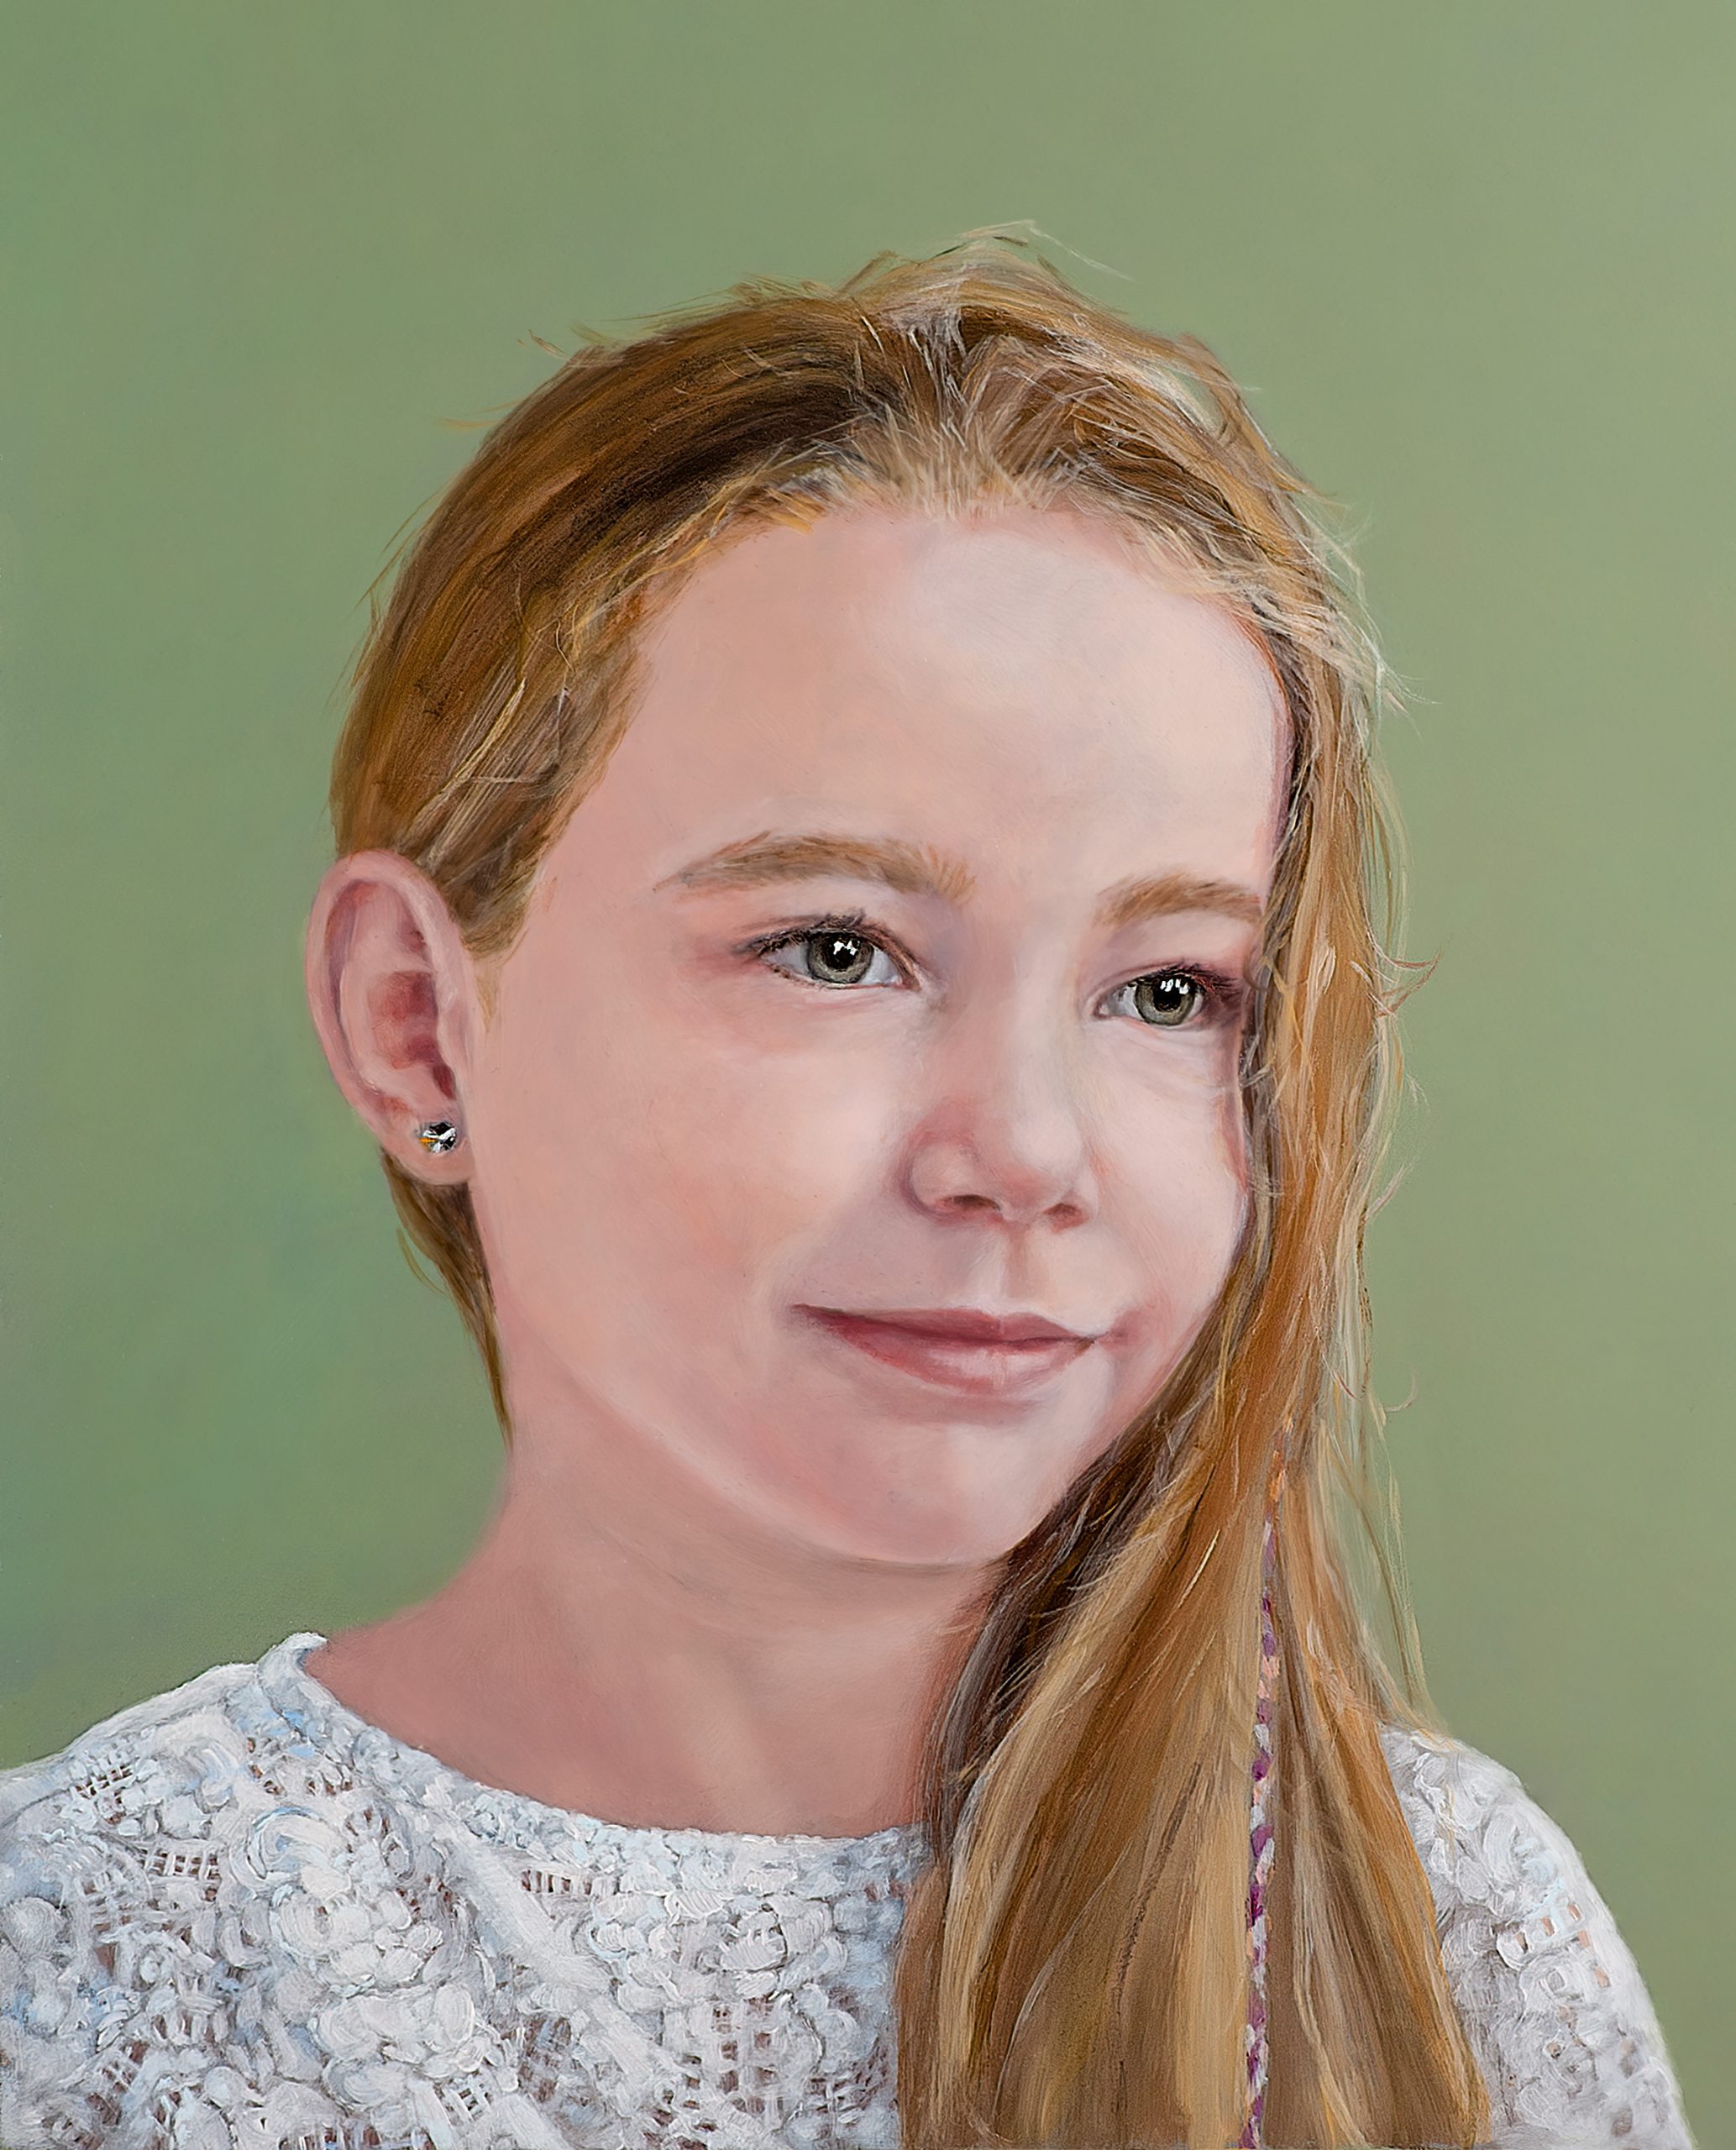 Een olieverfportret op een paneel van 40 x 50 cm, in opdracht geschilderd, toont een meisje met lang, blond haar genaamd Sien tegen een groene achtergrond. Dit kunstwerk is in 2019 geschilderd door portretschilder Anneke Ensing.